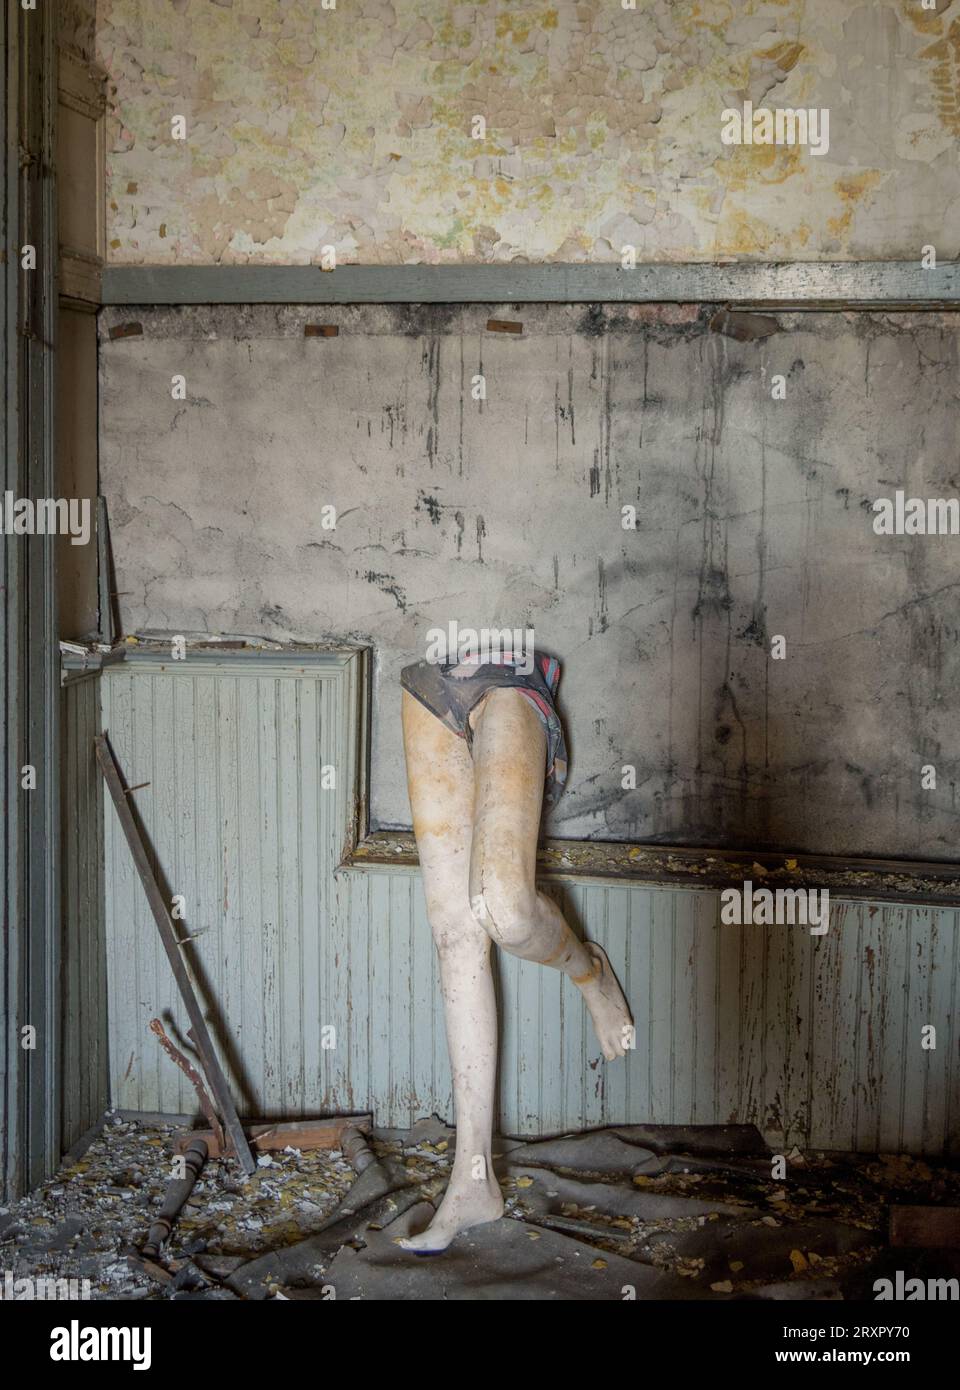 Mezzo manichino ha posato in una scuola abbandonata. Foto di Liz Roll Foto Stock